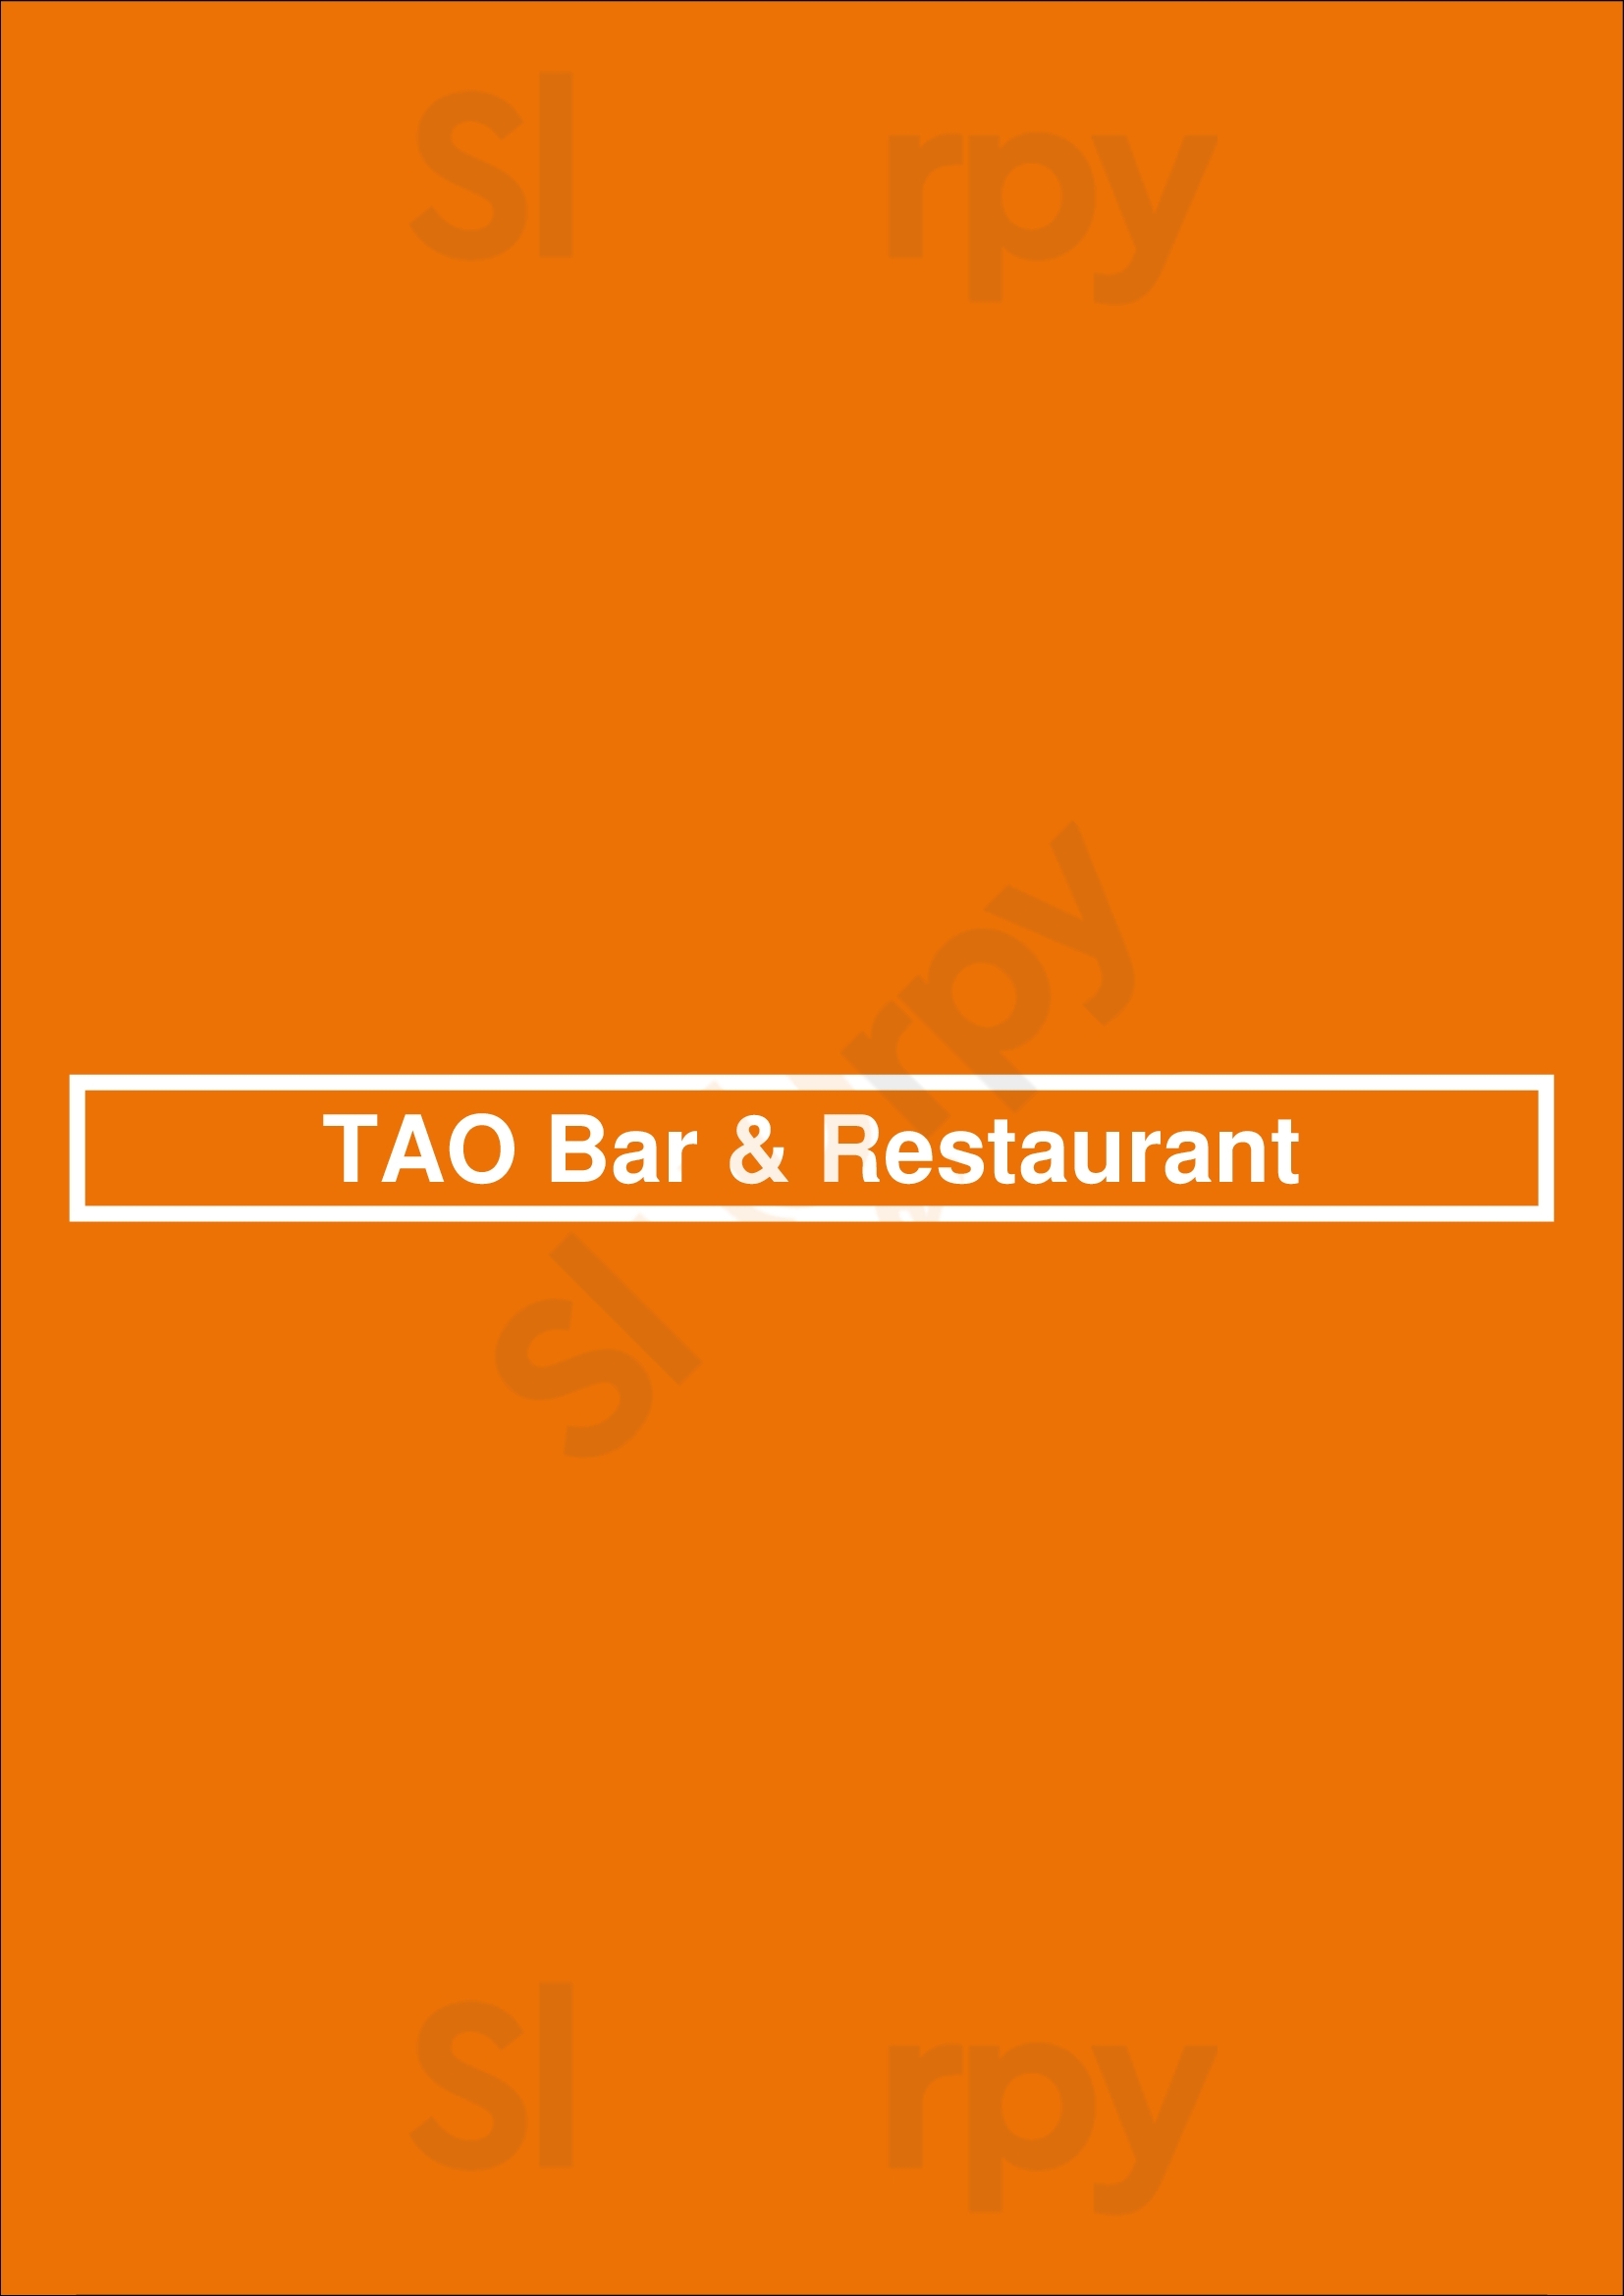 Tao Bar & Restaurant Bonn Menu - 1